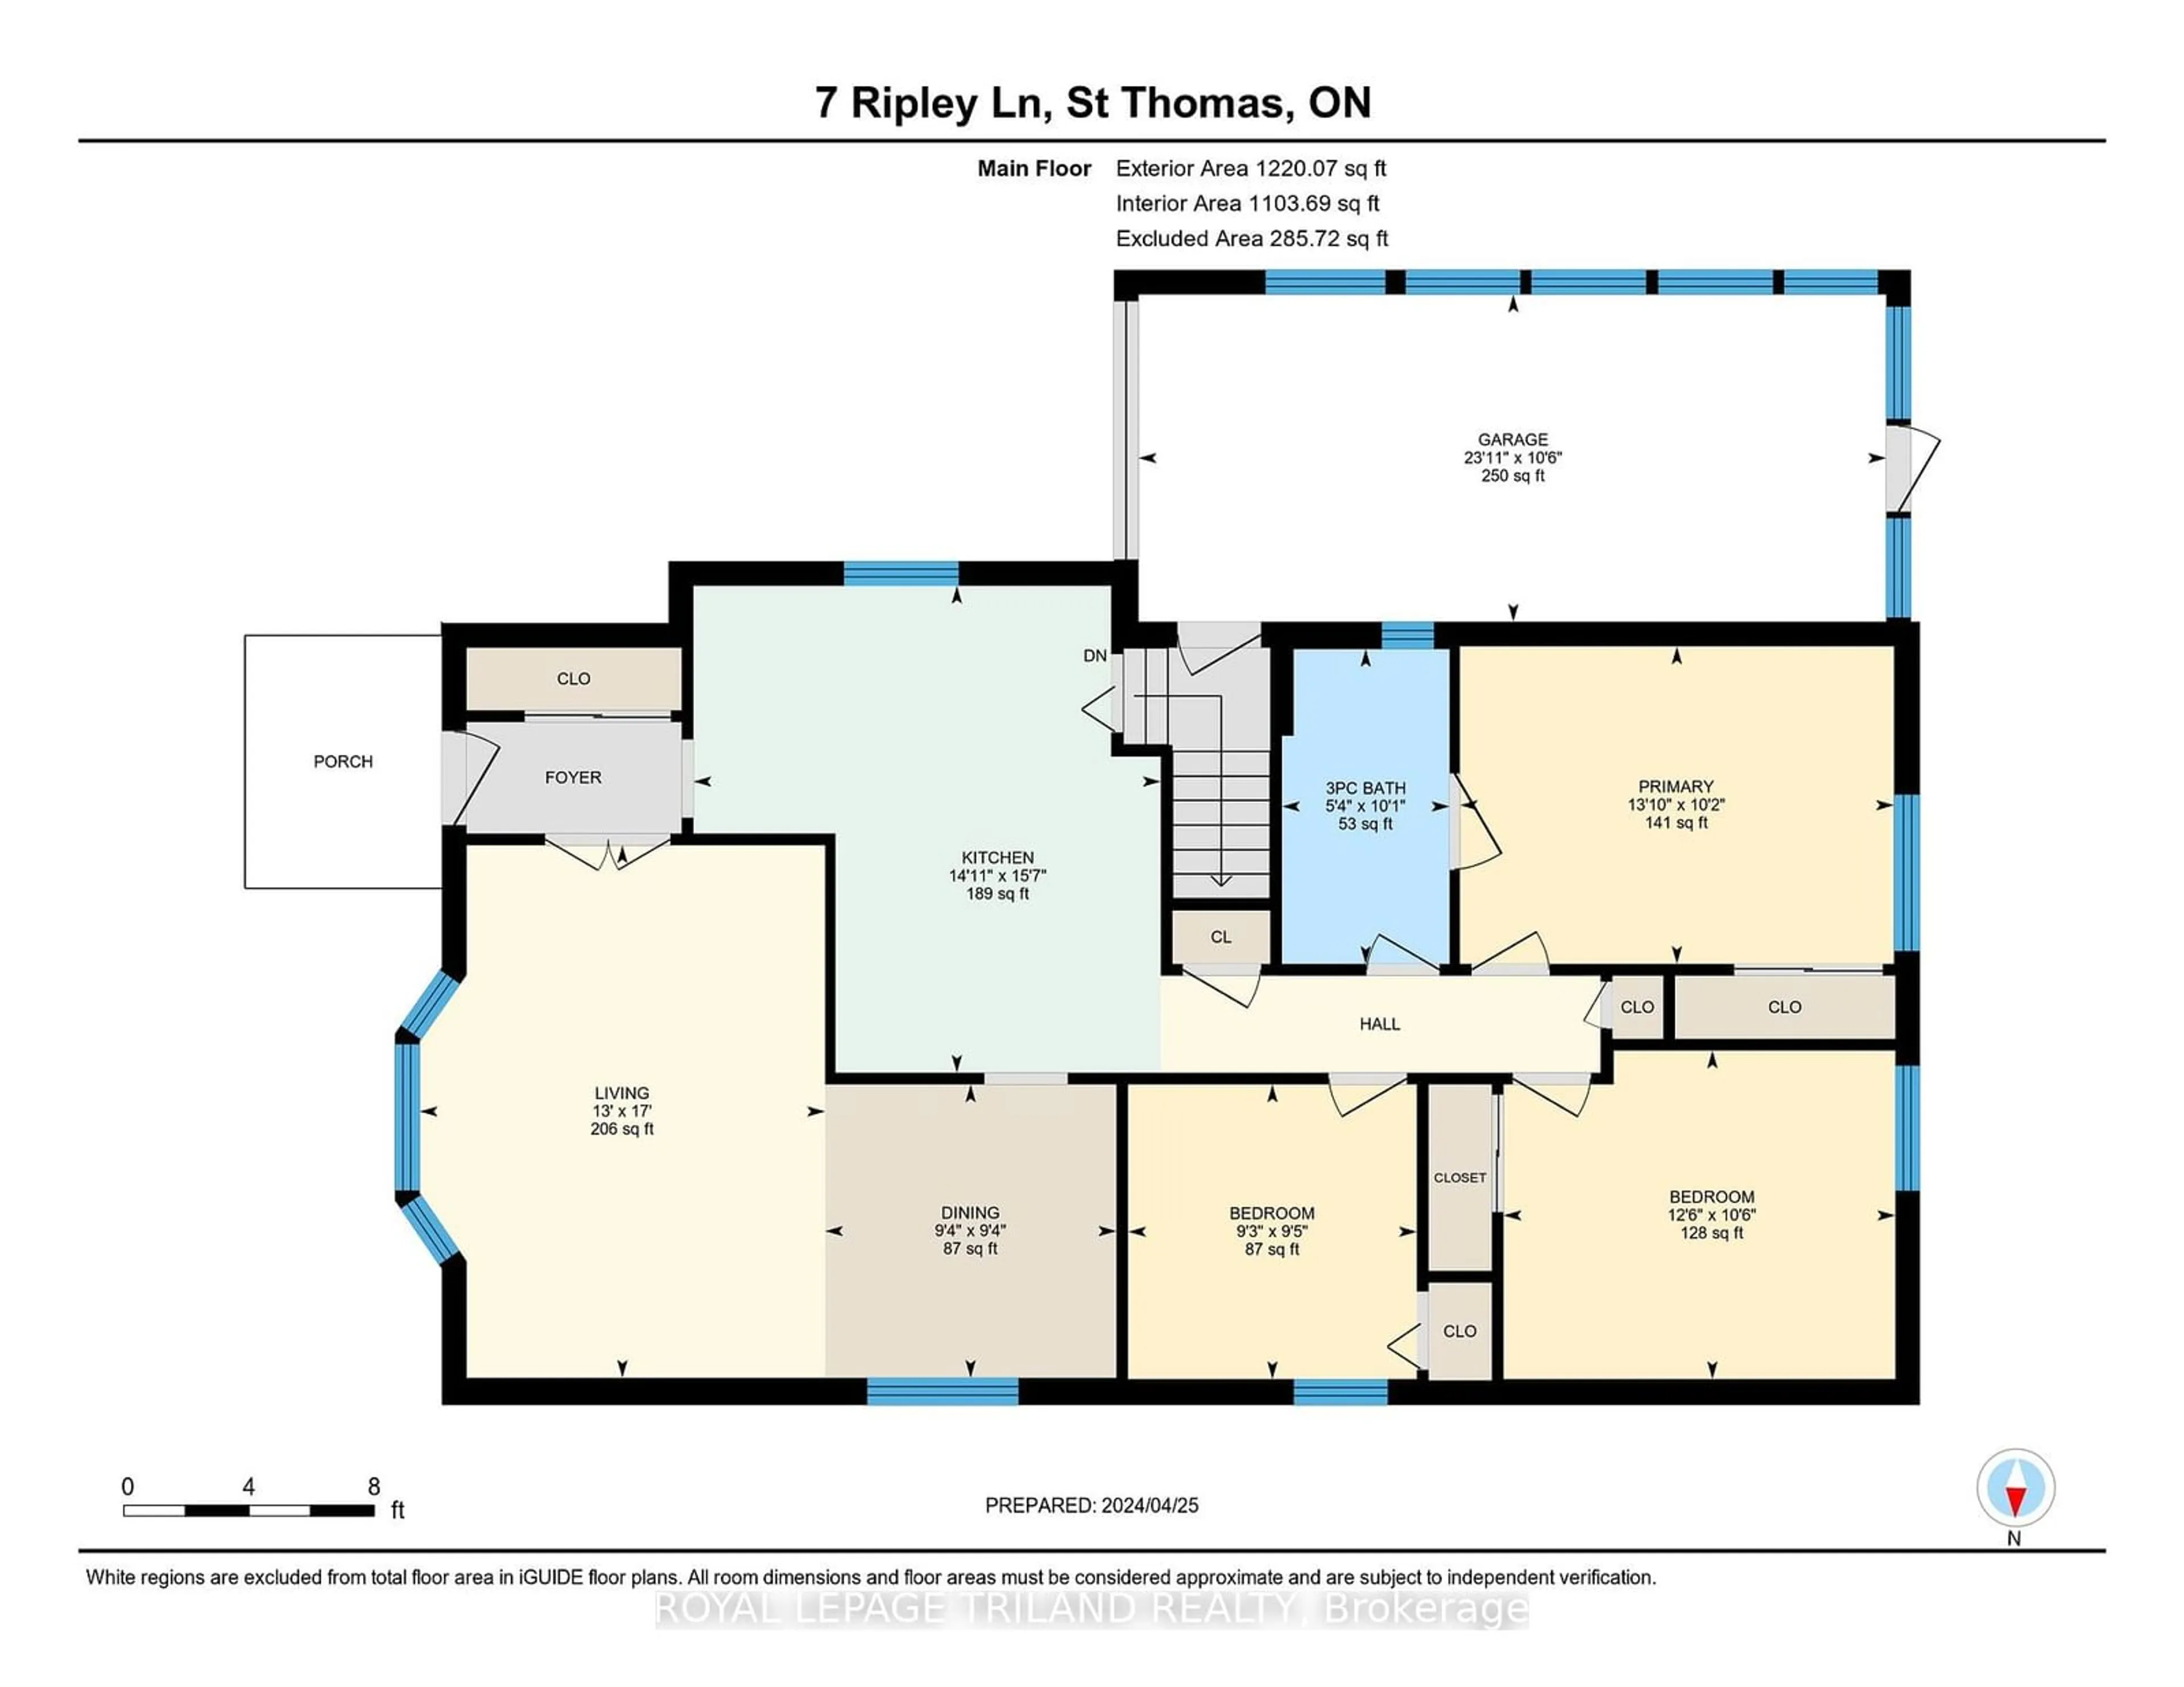 Floor plan for 7 Ripley Lane, St. Thomas Ontario N5R 5X1